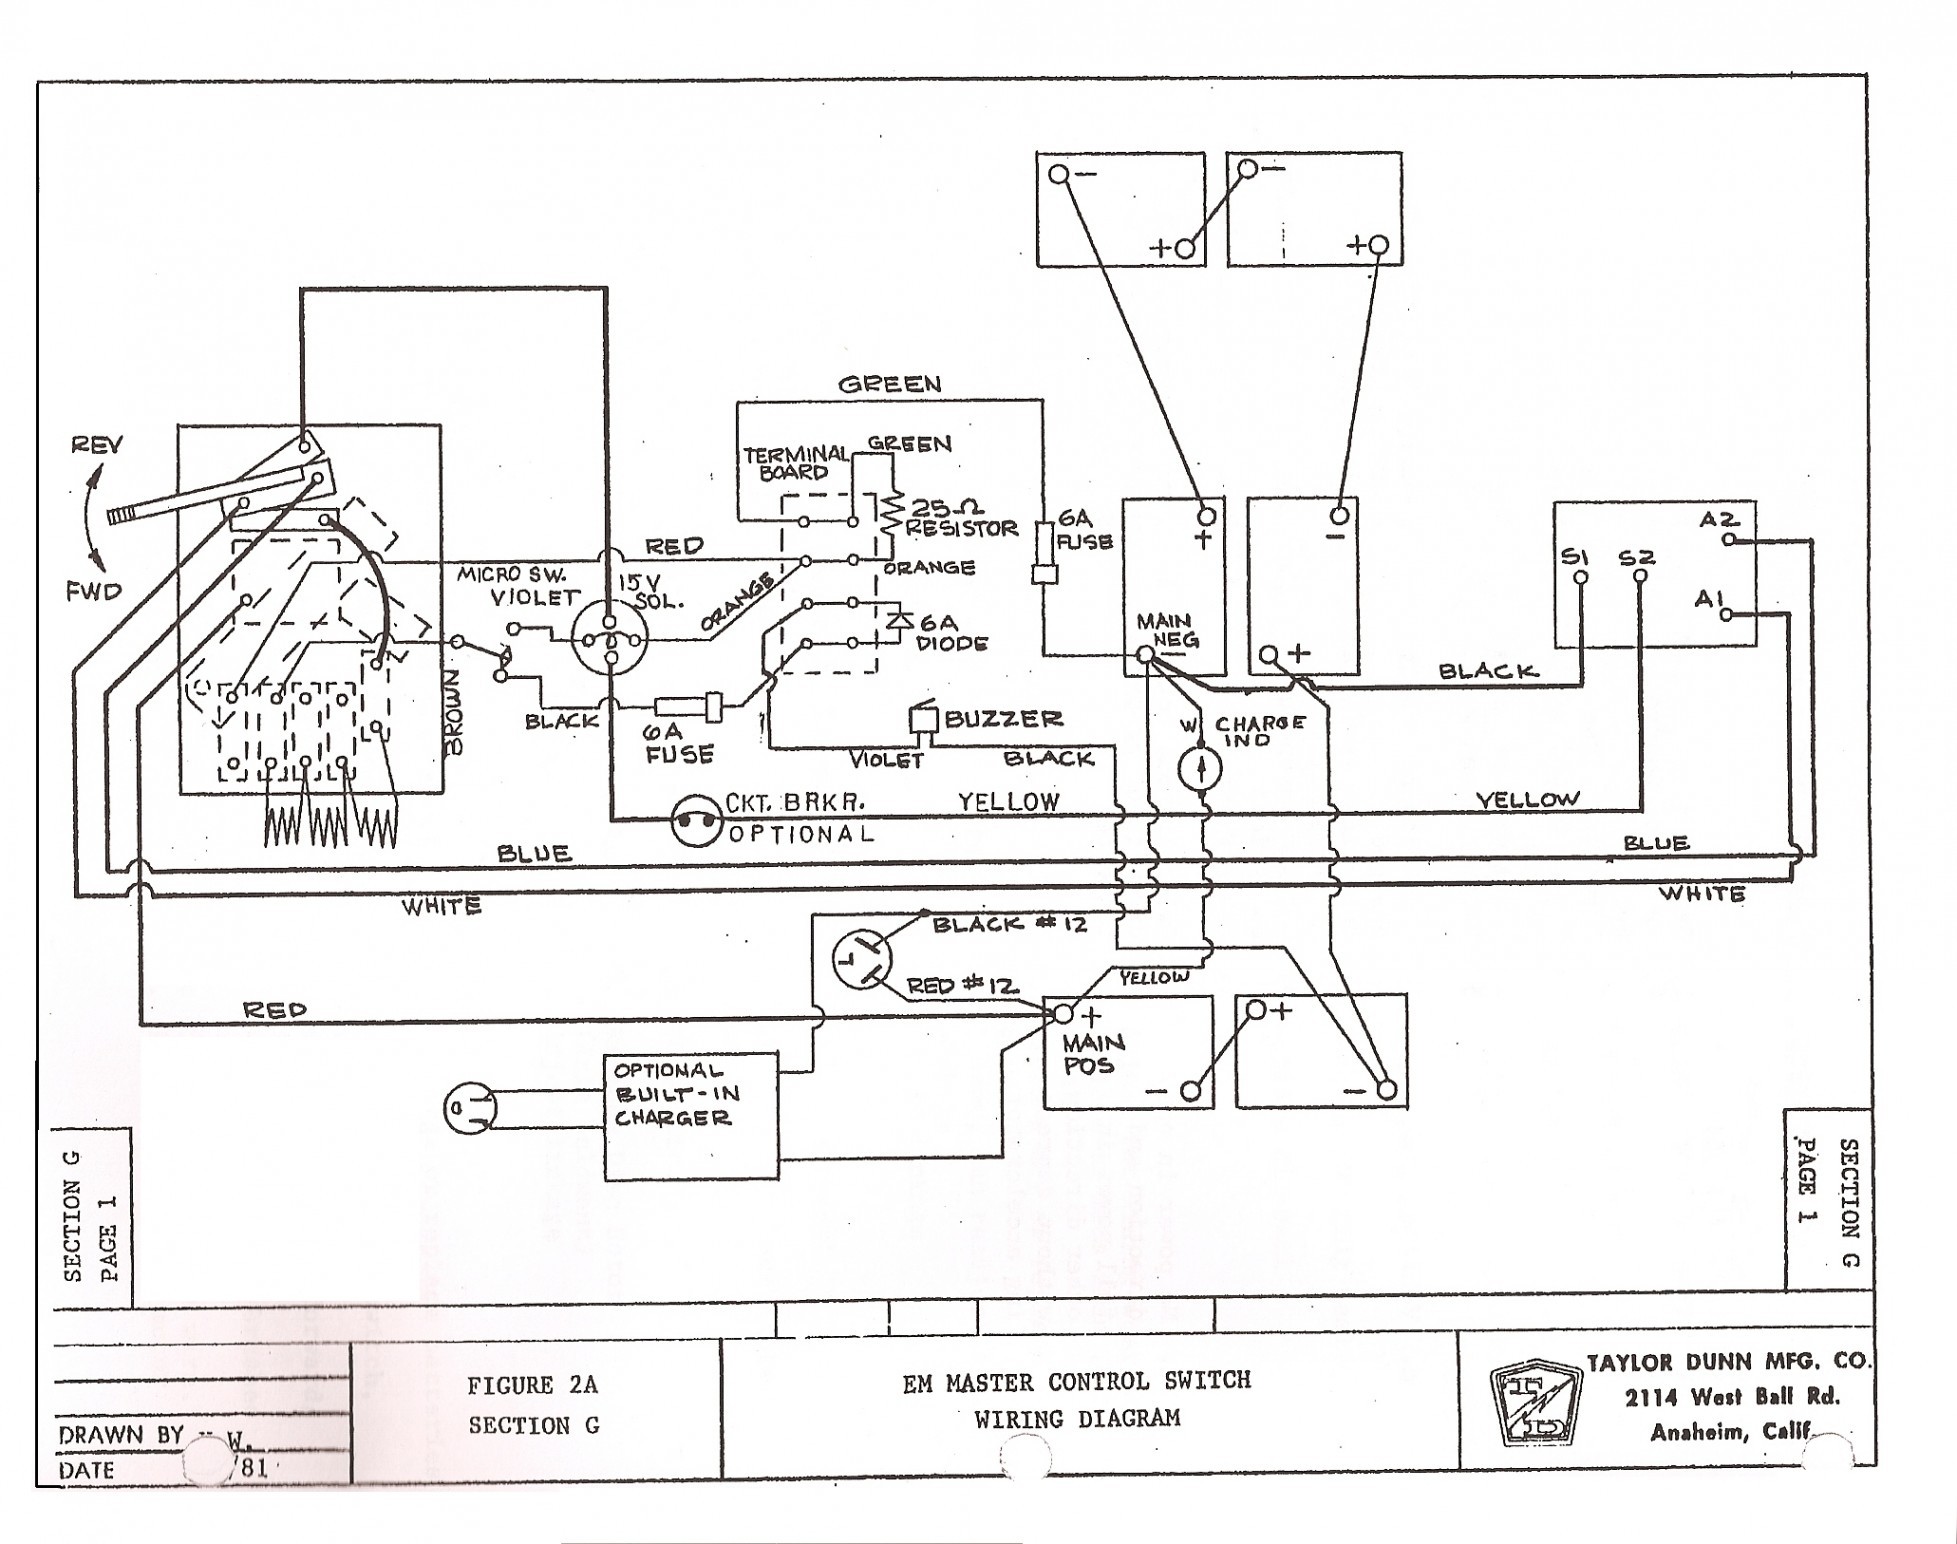 Parts Diagram for Club Car Ez Go Wiring Diagram 36 Volt – 1995 Club Car Wiring Diagram 1995 48 Of Parts Diagram for Club Car